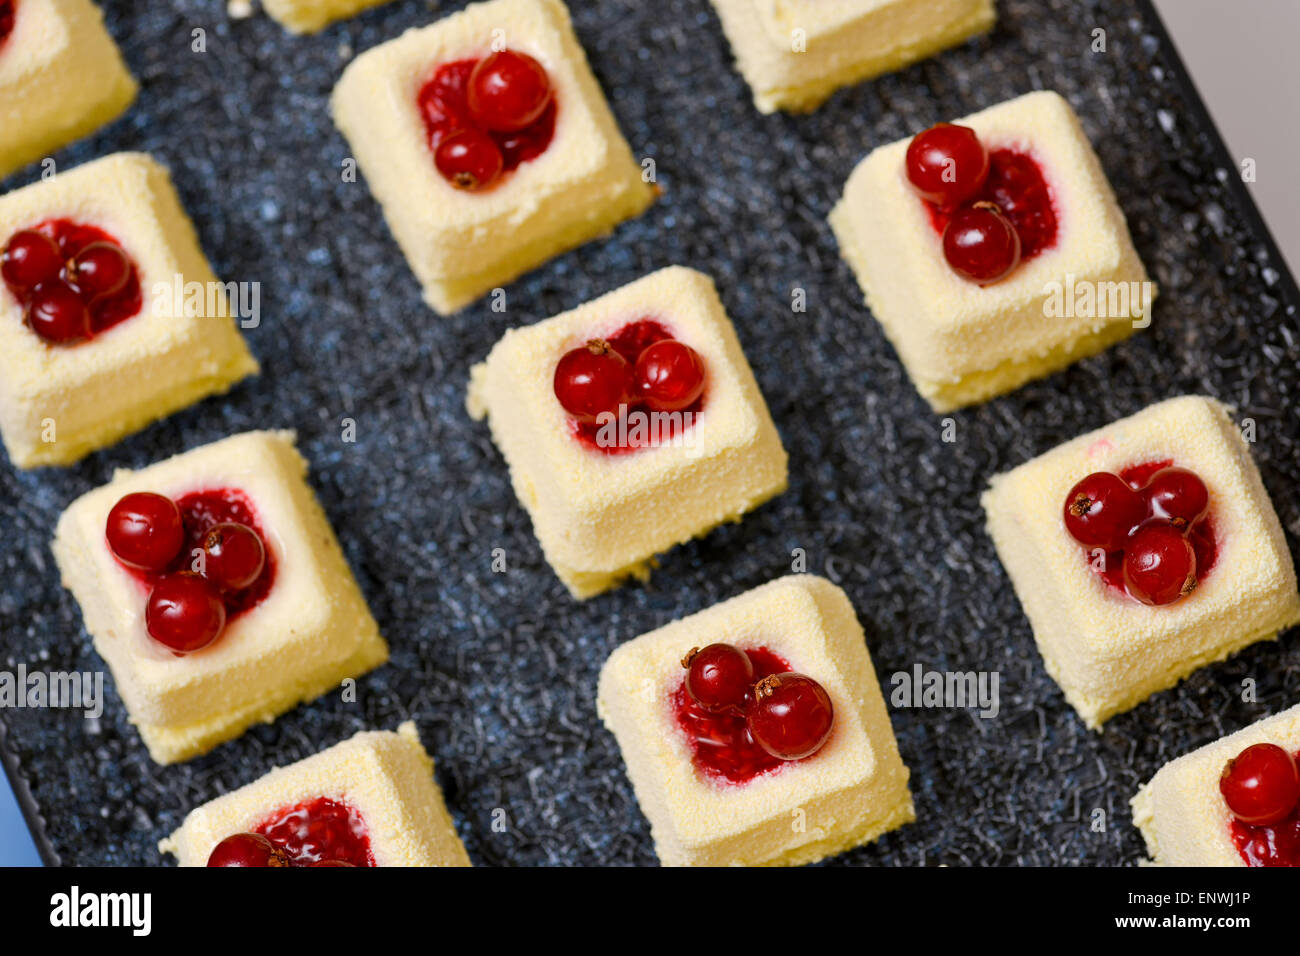 Torte di bianco con mirtilli rossi Foto Stock